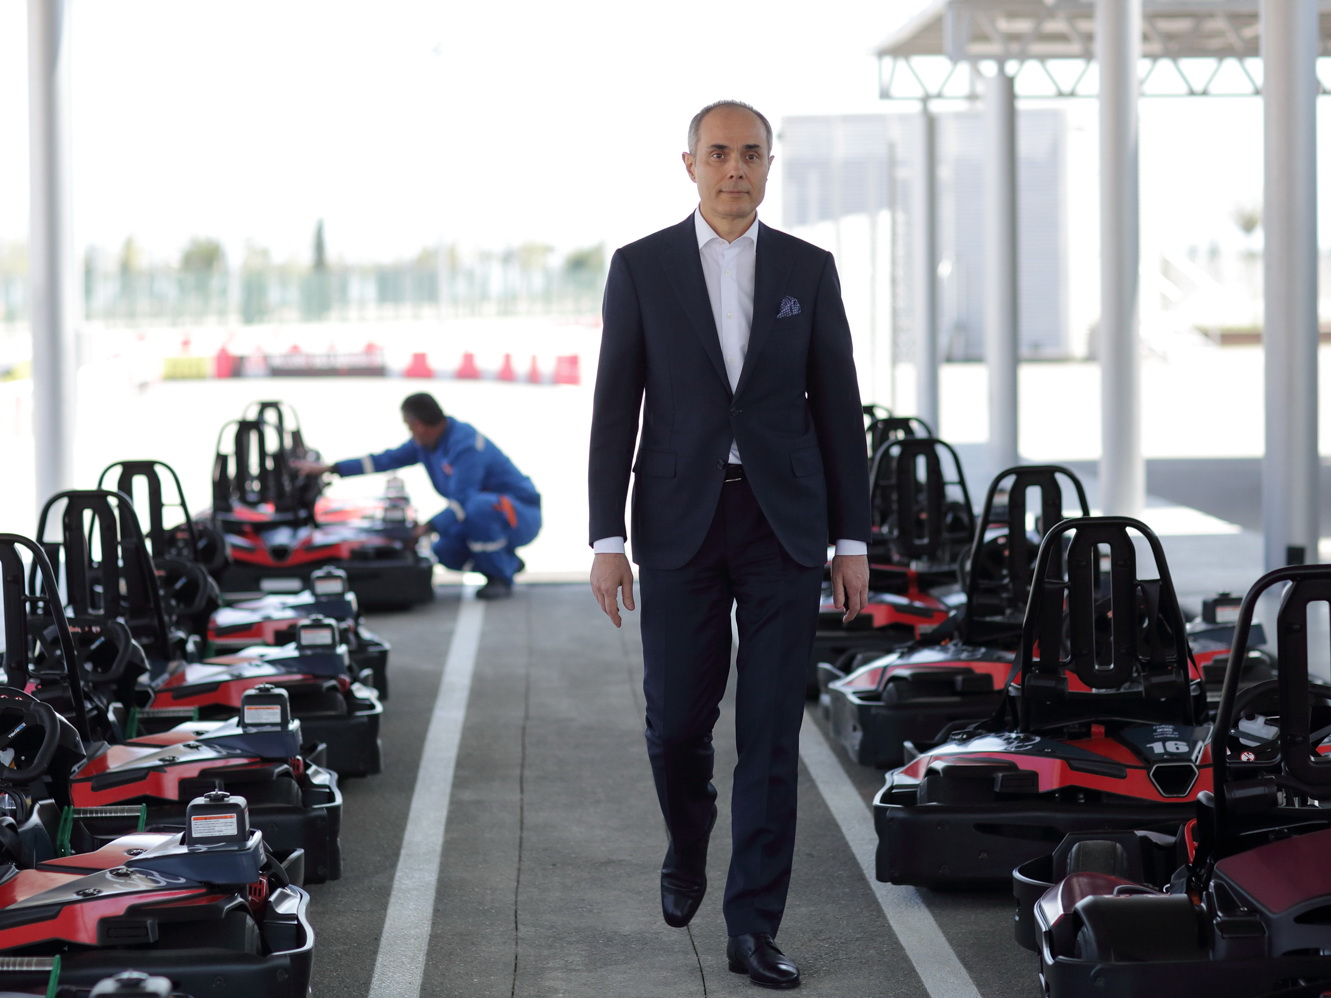 Эльчин Гасанов: «Мы будем развивать картинг, как одно из направлений автоспорта для того, чтобы в будущем, готовить пилотов Формулы -1»